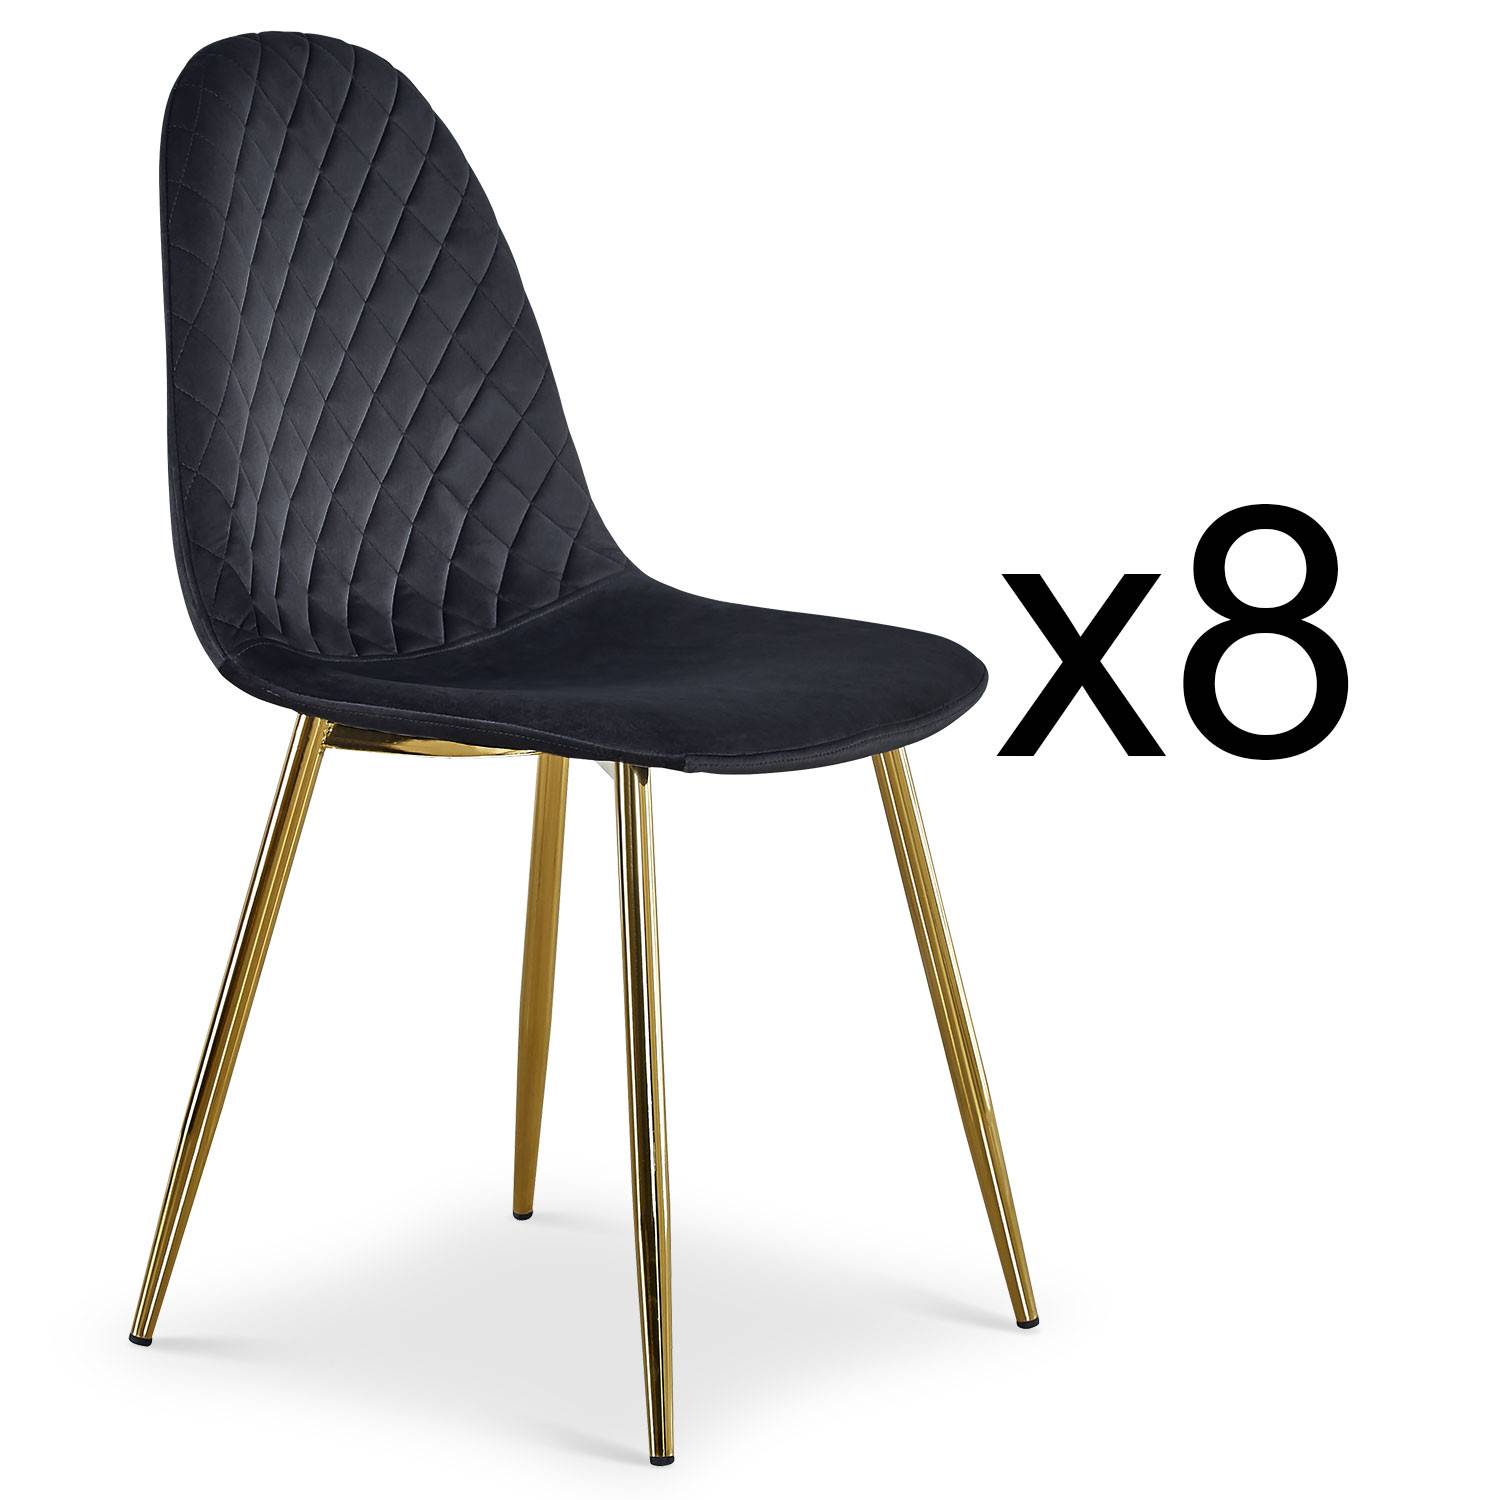 Lote de 8 sillas Norway acolchadas patas doradas y terciopelo negro